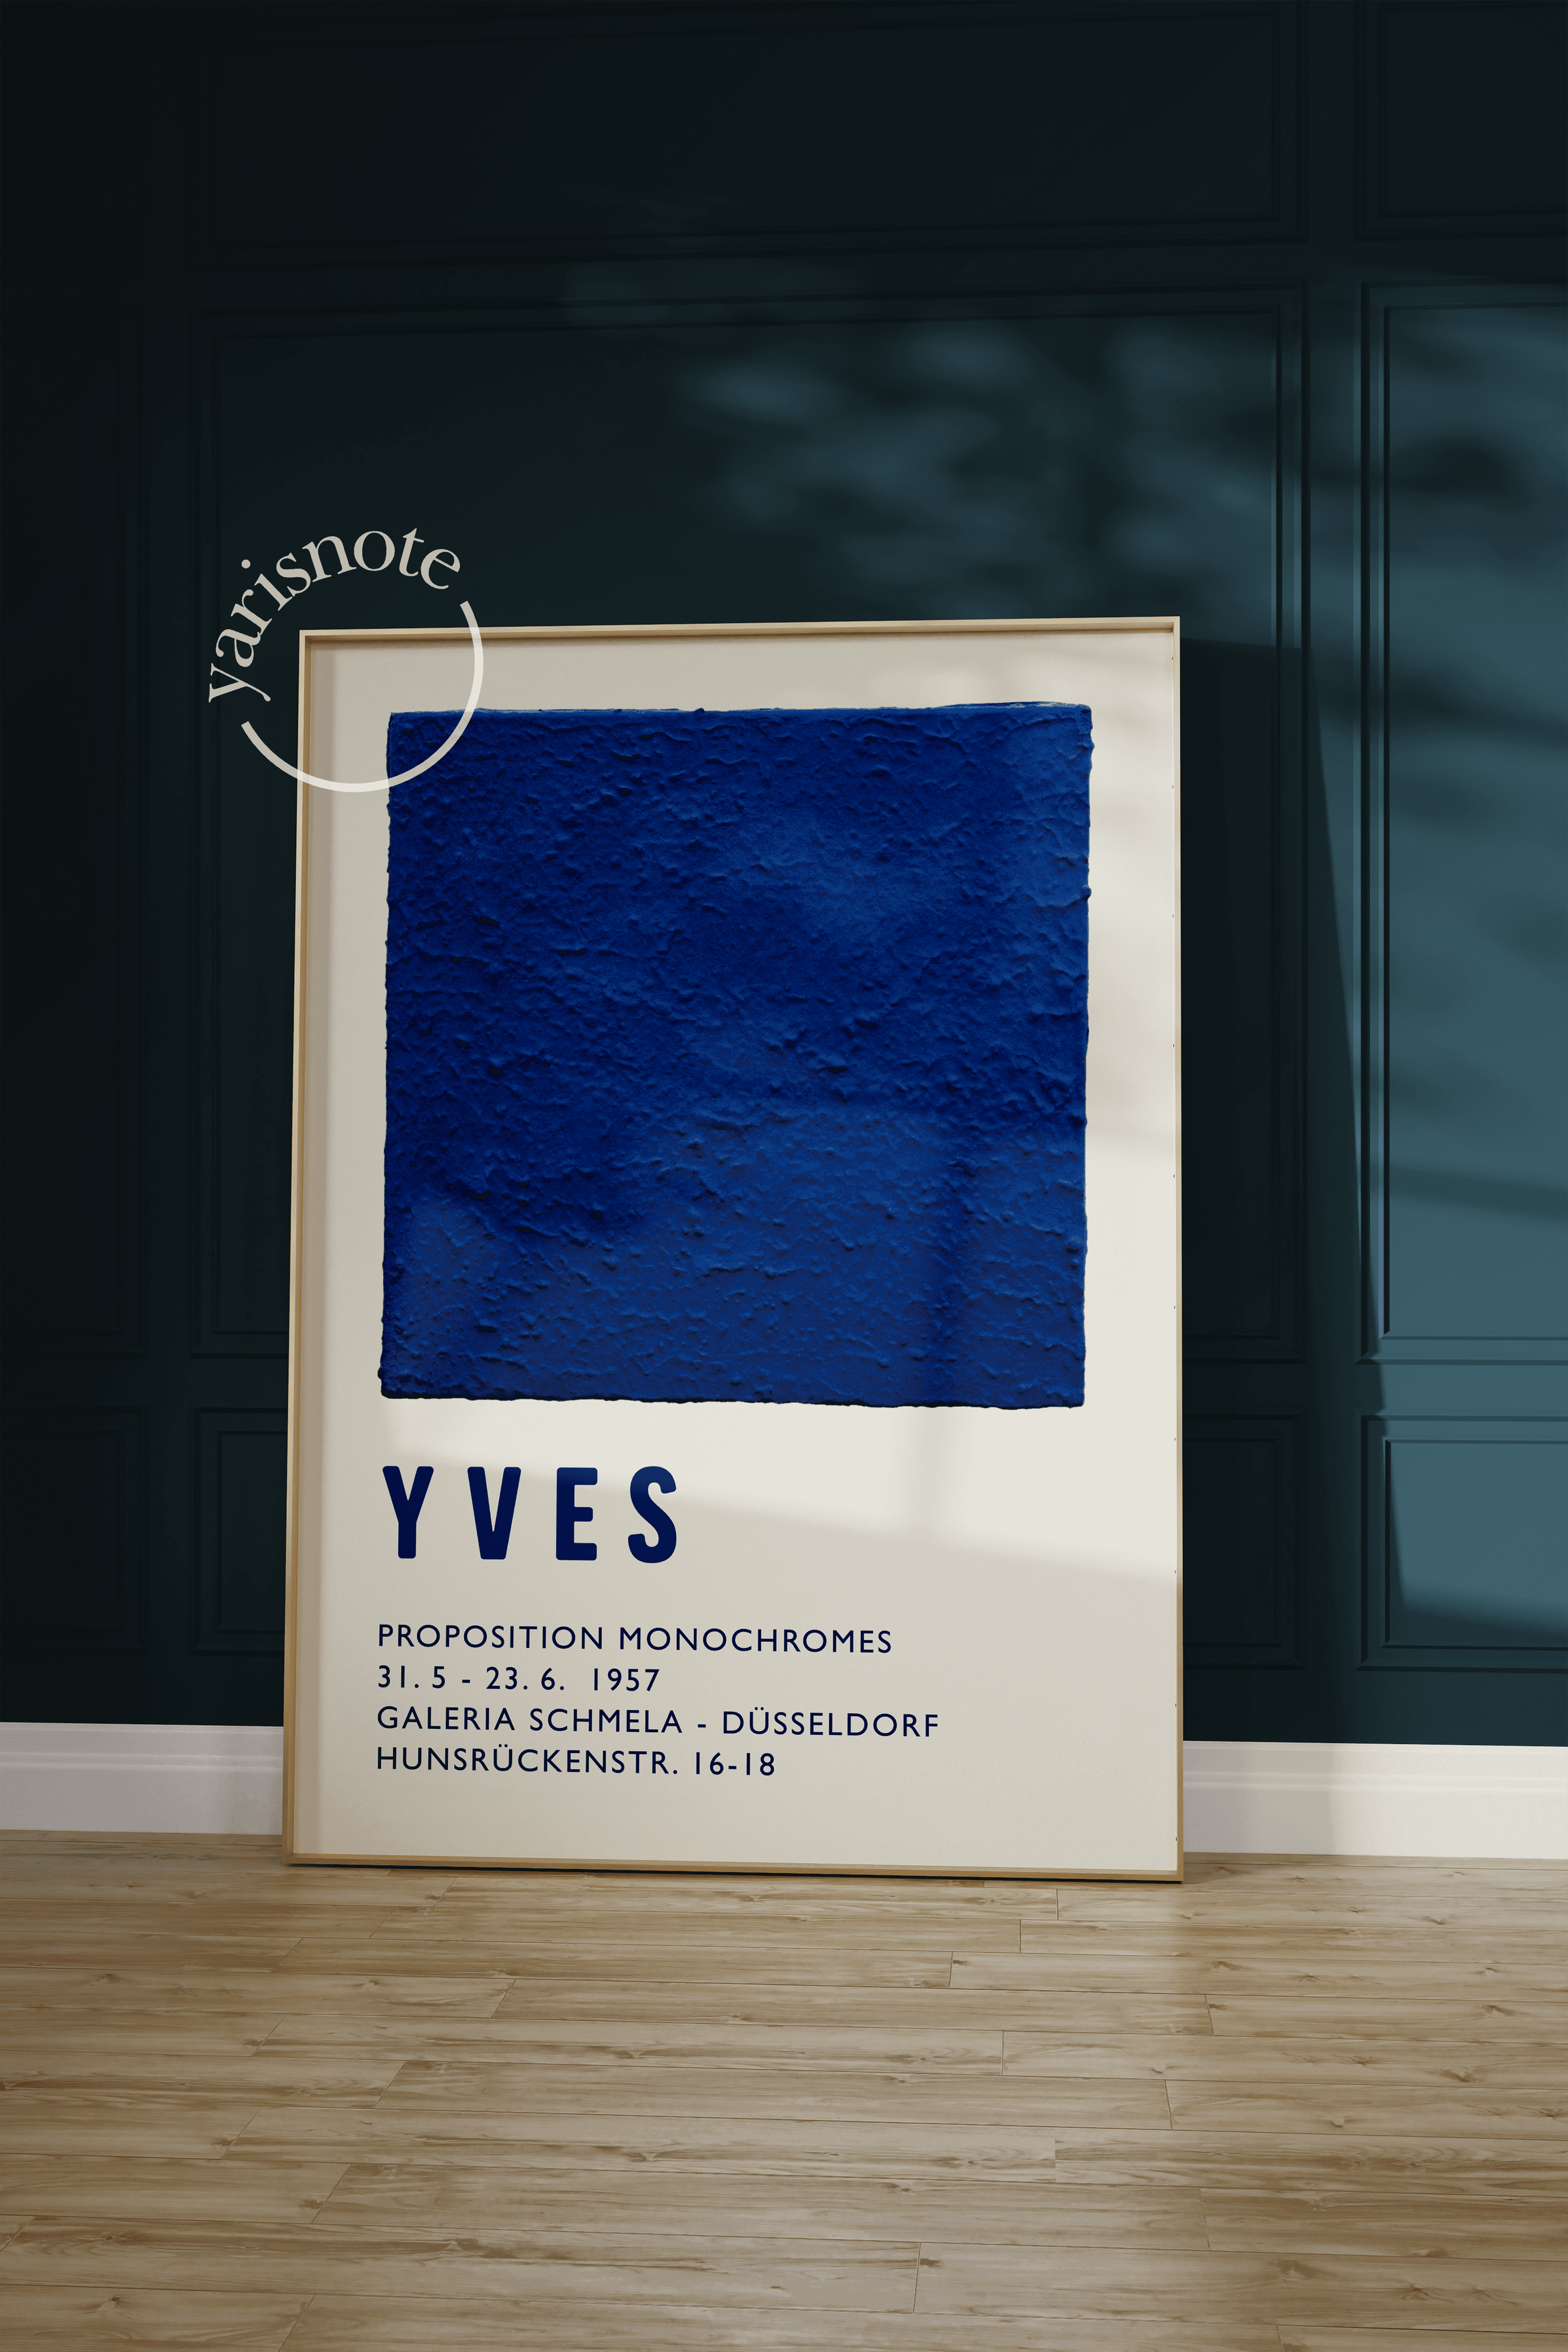 Yves Klein Unframed Poster